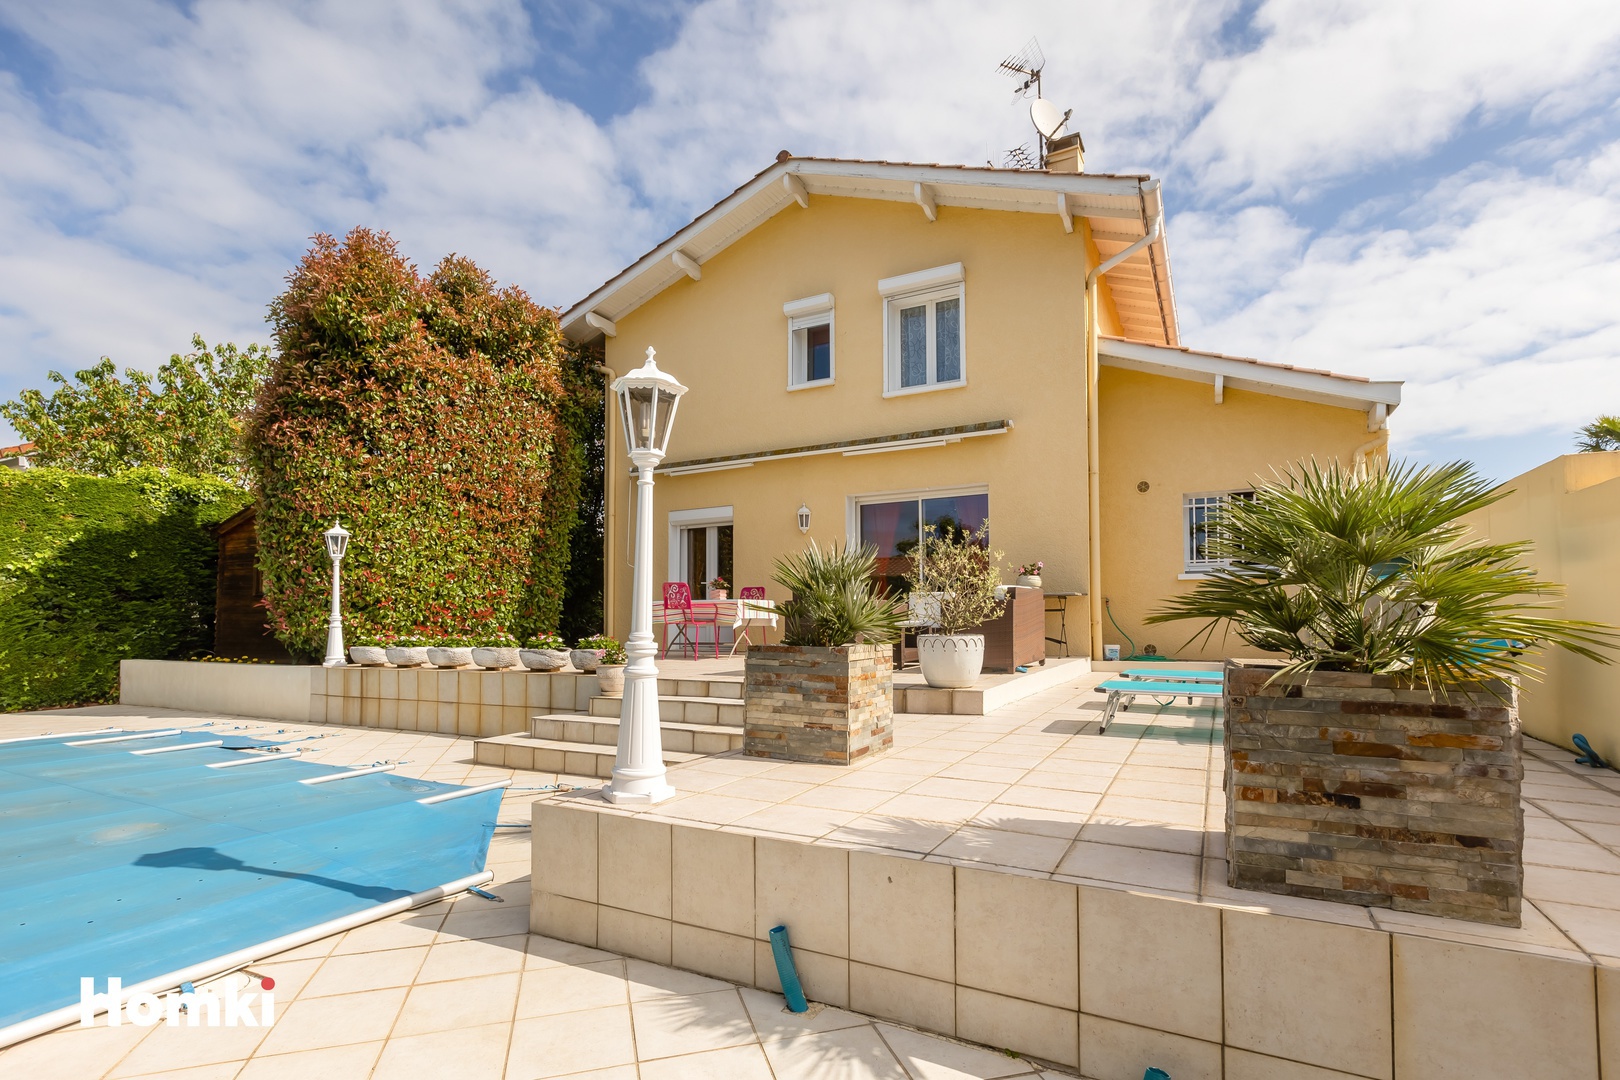 Homki - Vente Maison/villa  de 105.0 m² à Tarnos 40220